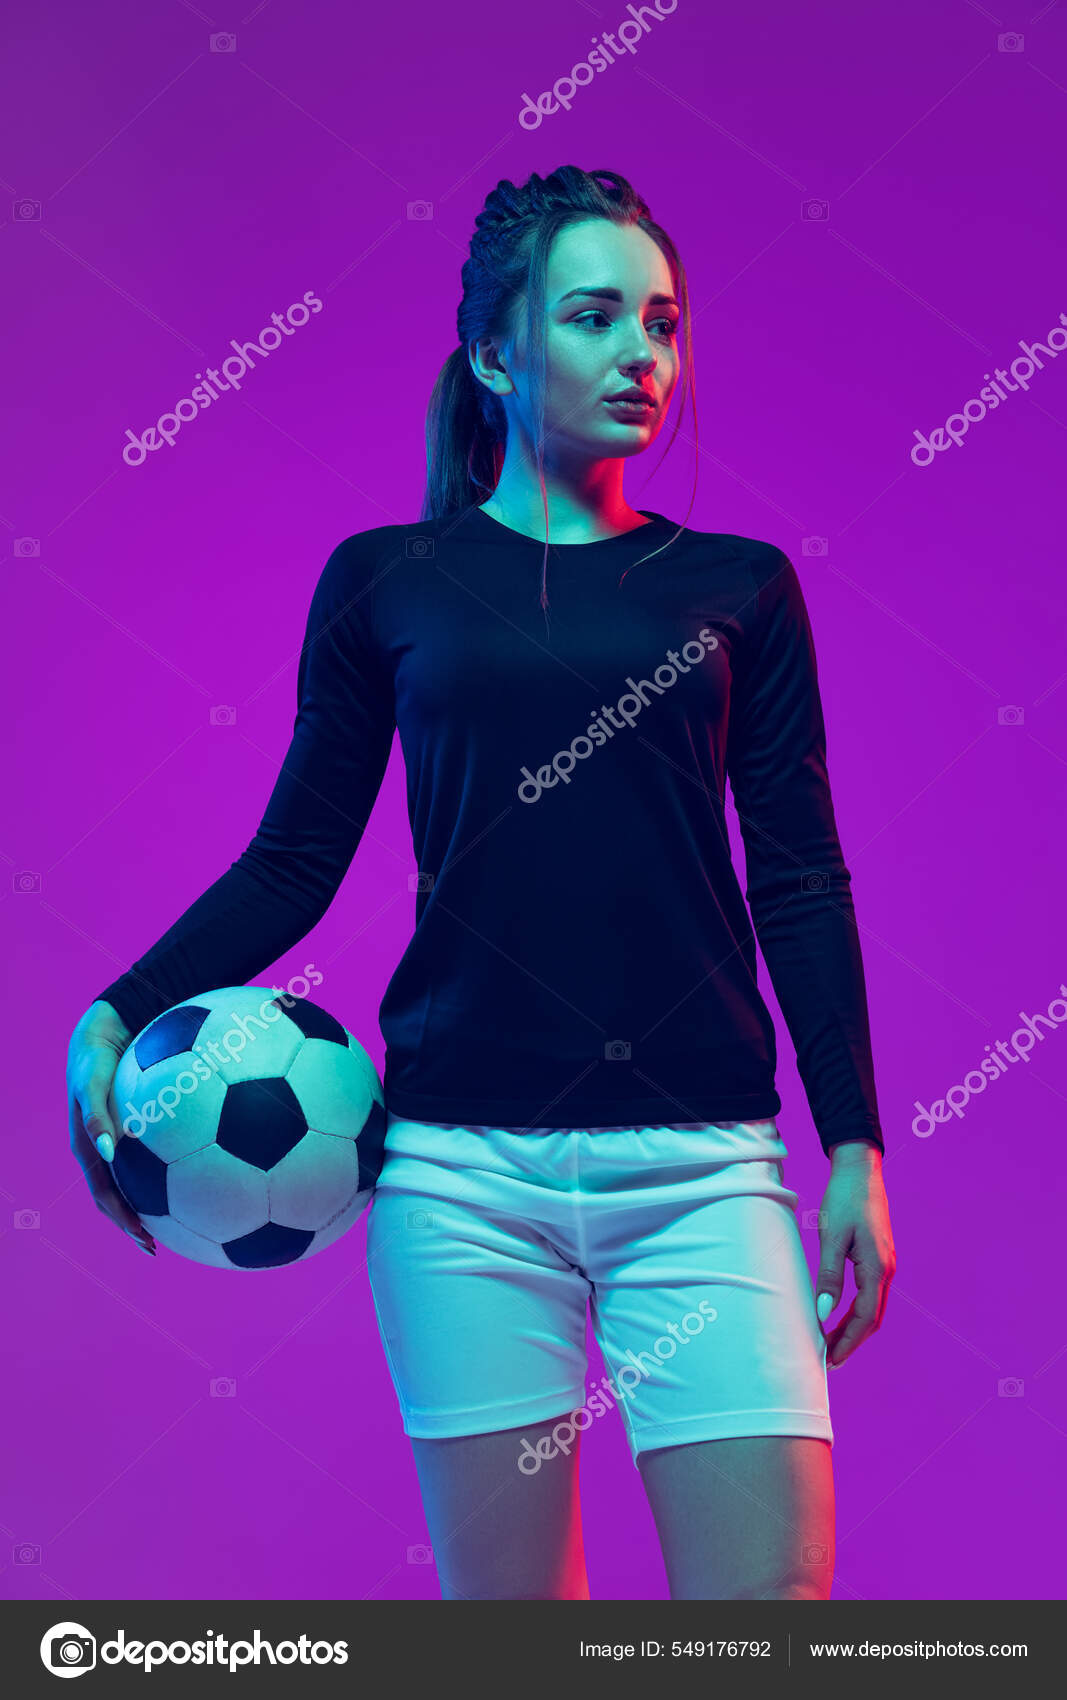 Imagens de fundo Futebol feminino